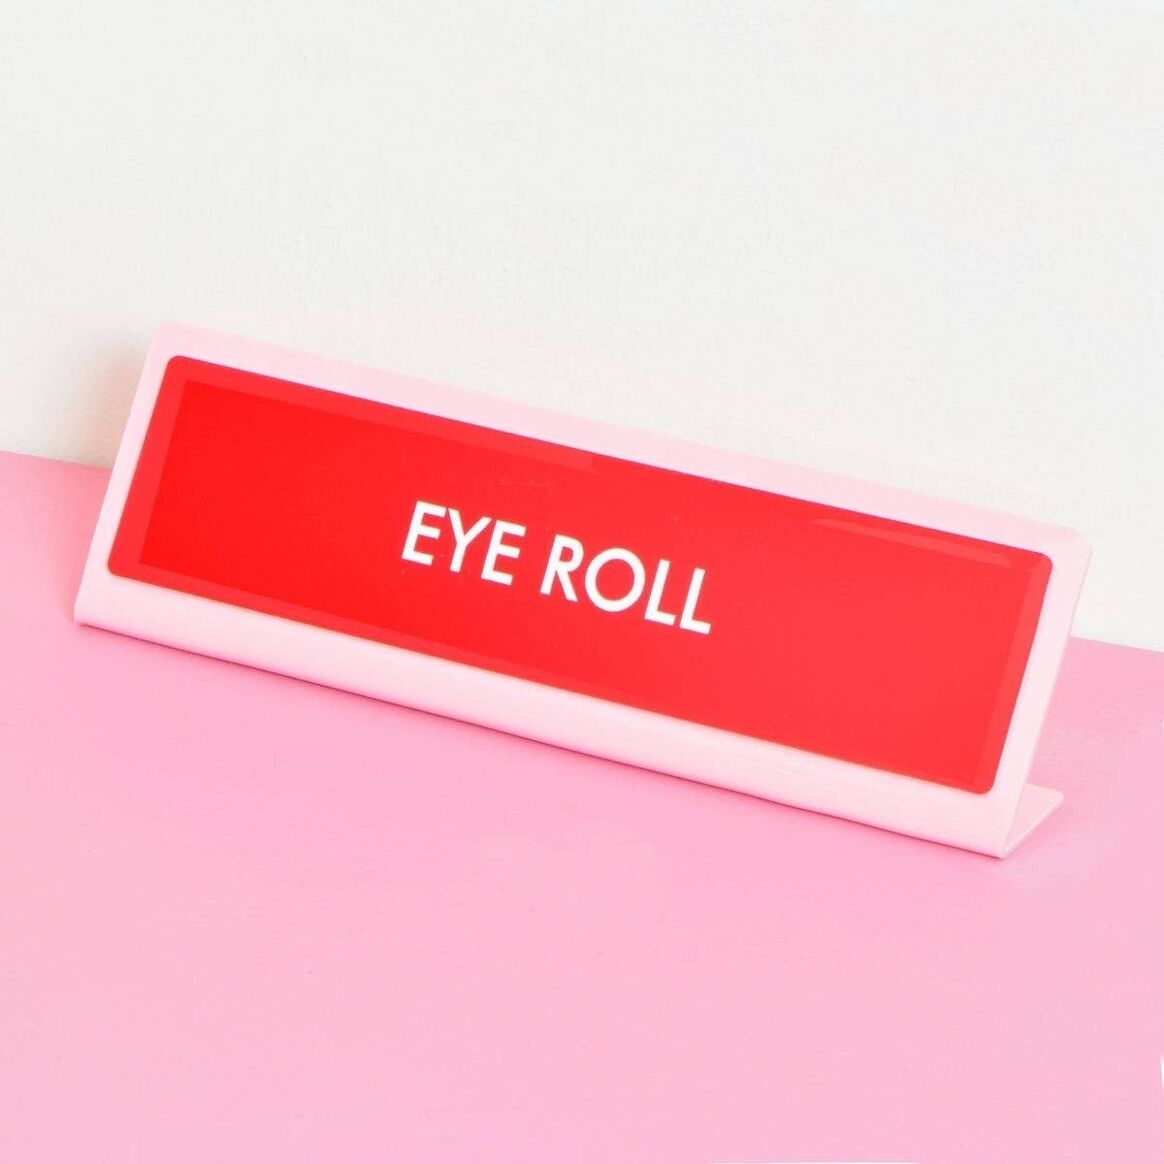 Schreibtischschild "Eye Roll"